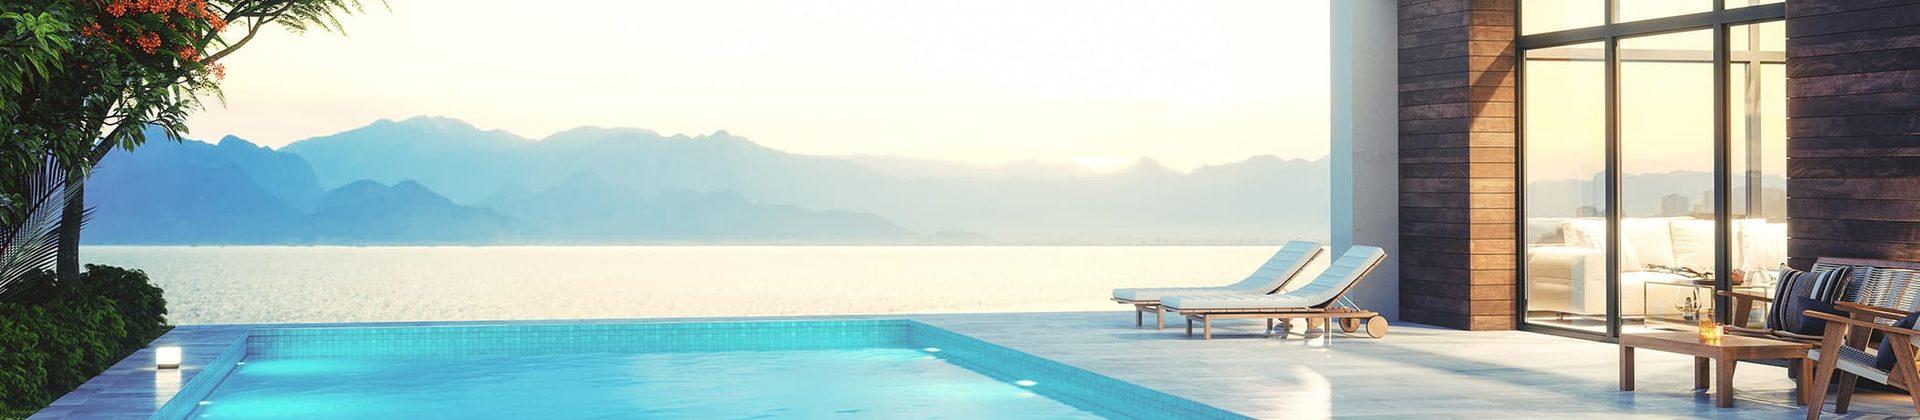 Ferienhaus mit Pool in der Toskana - TUI